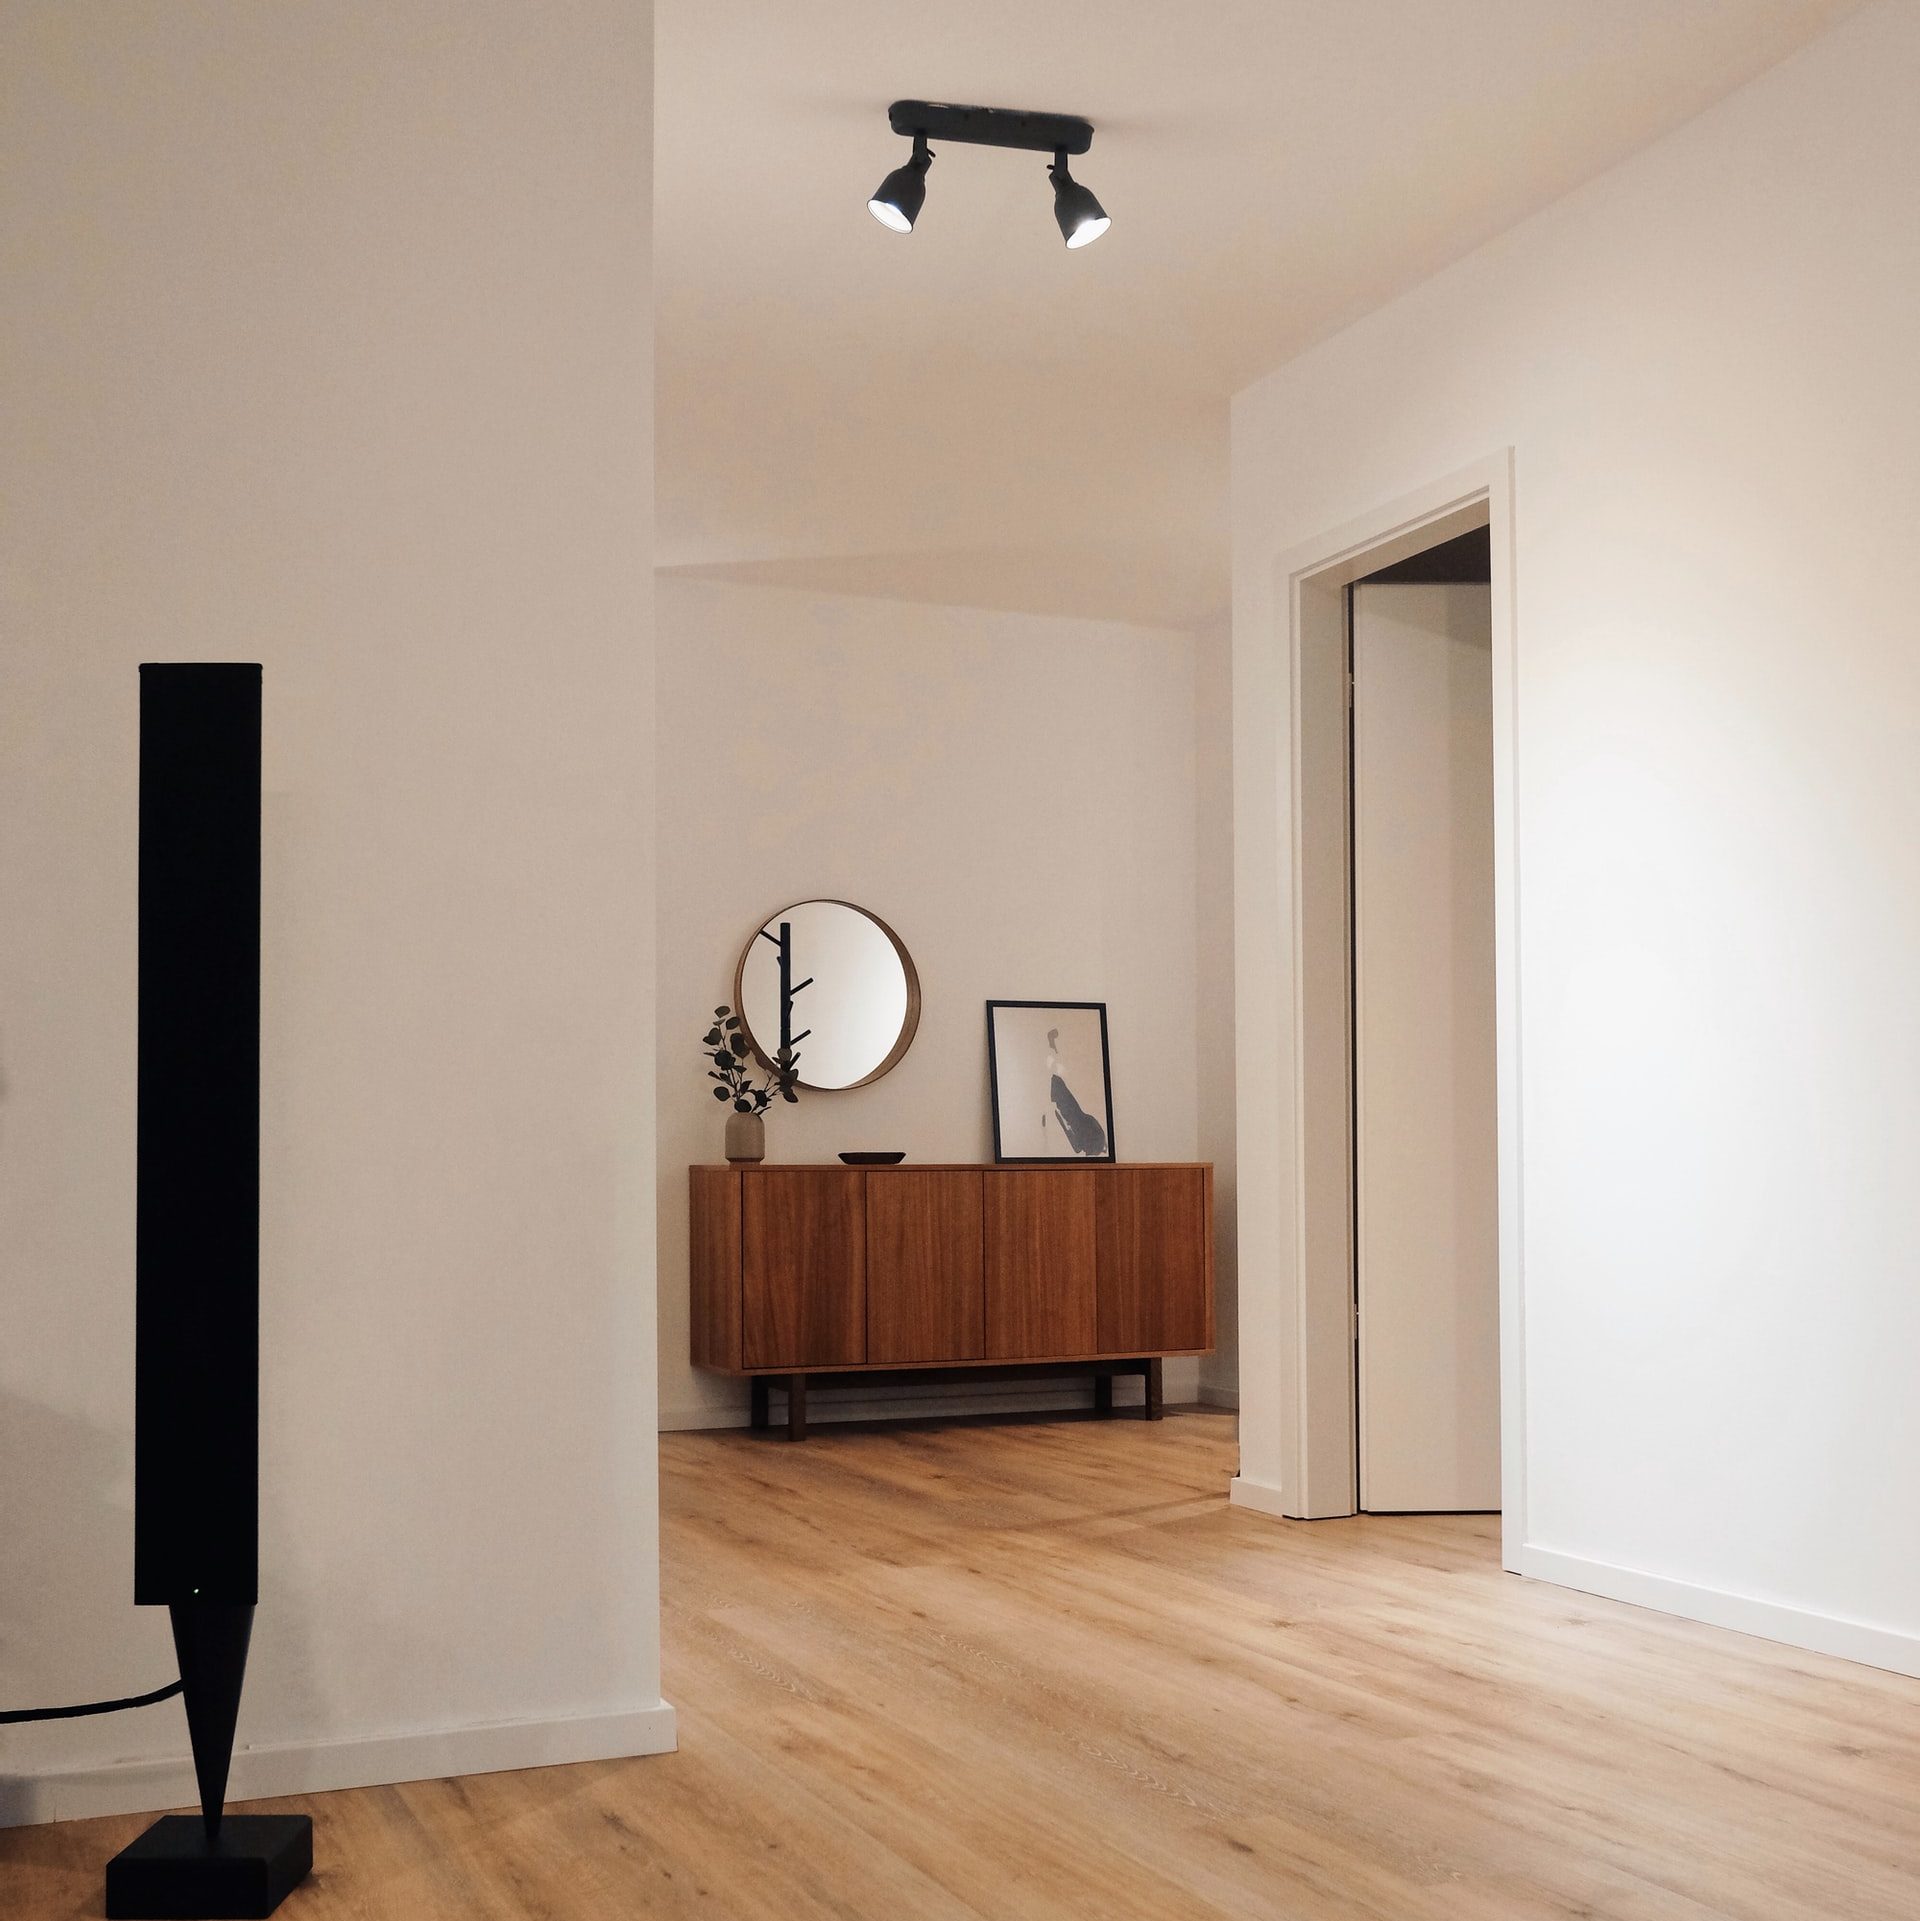 A minimalist room with black track lighting